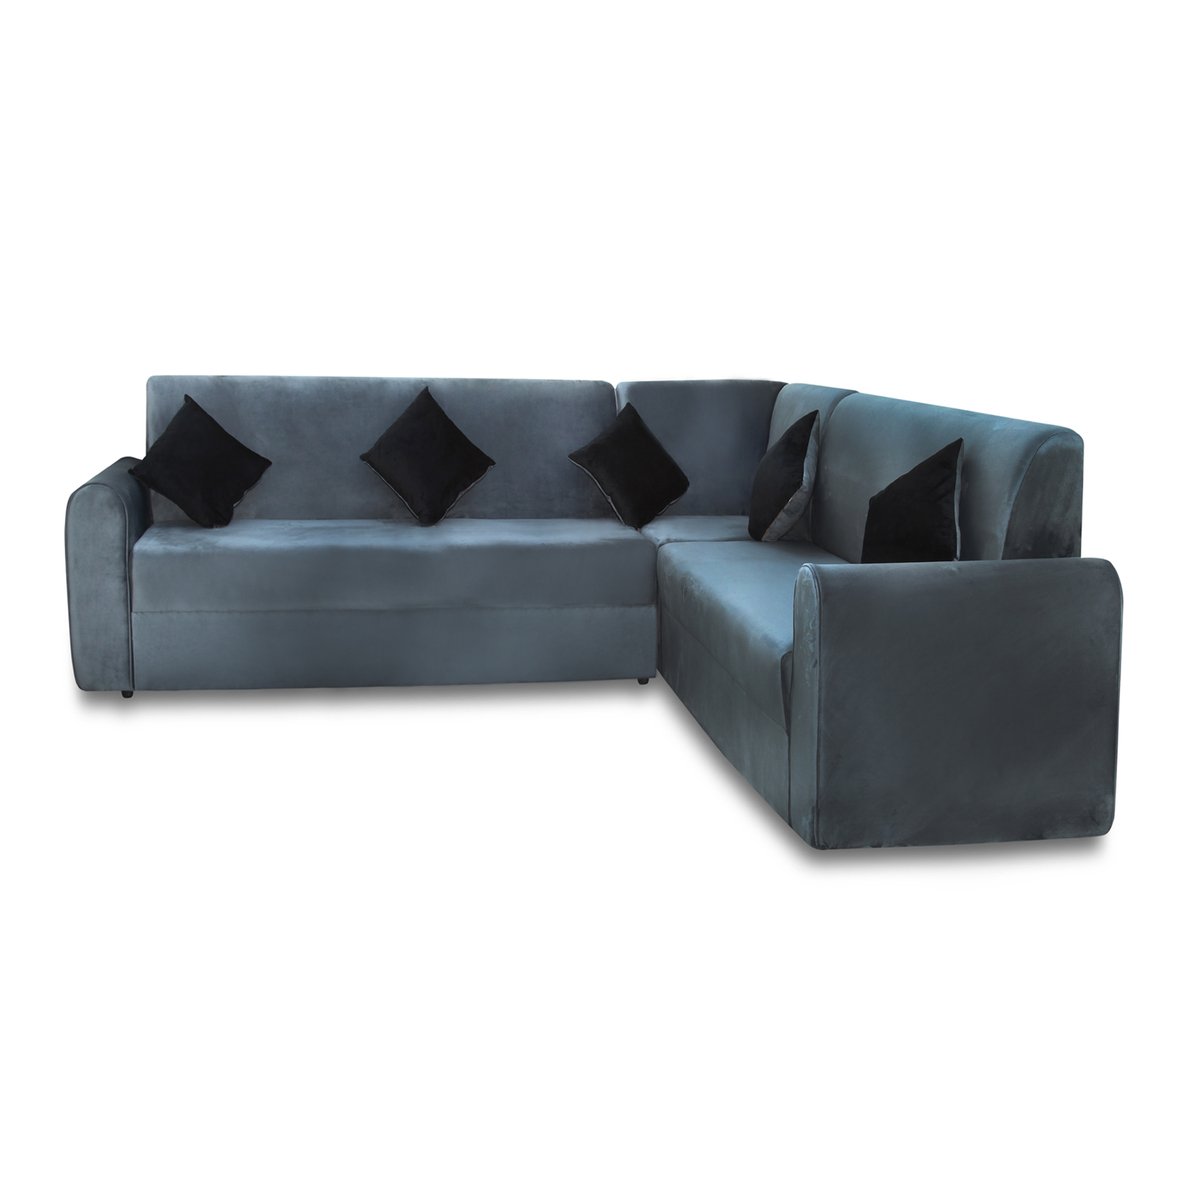 Design Plus Fabric Corner Sofa Set 280x190cm DP02 Grey